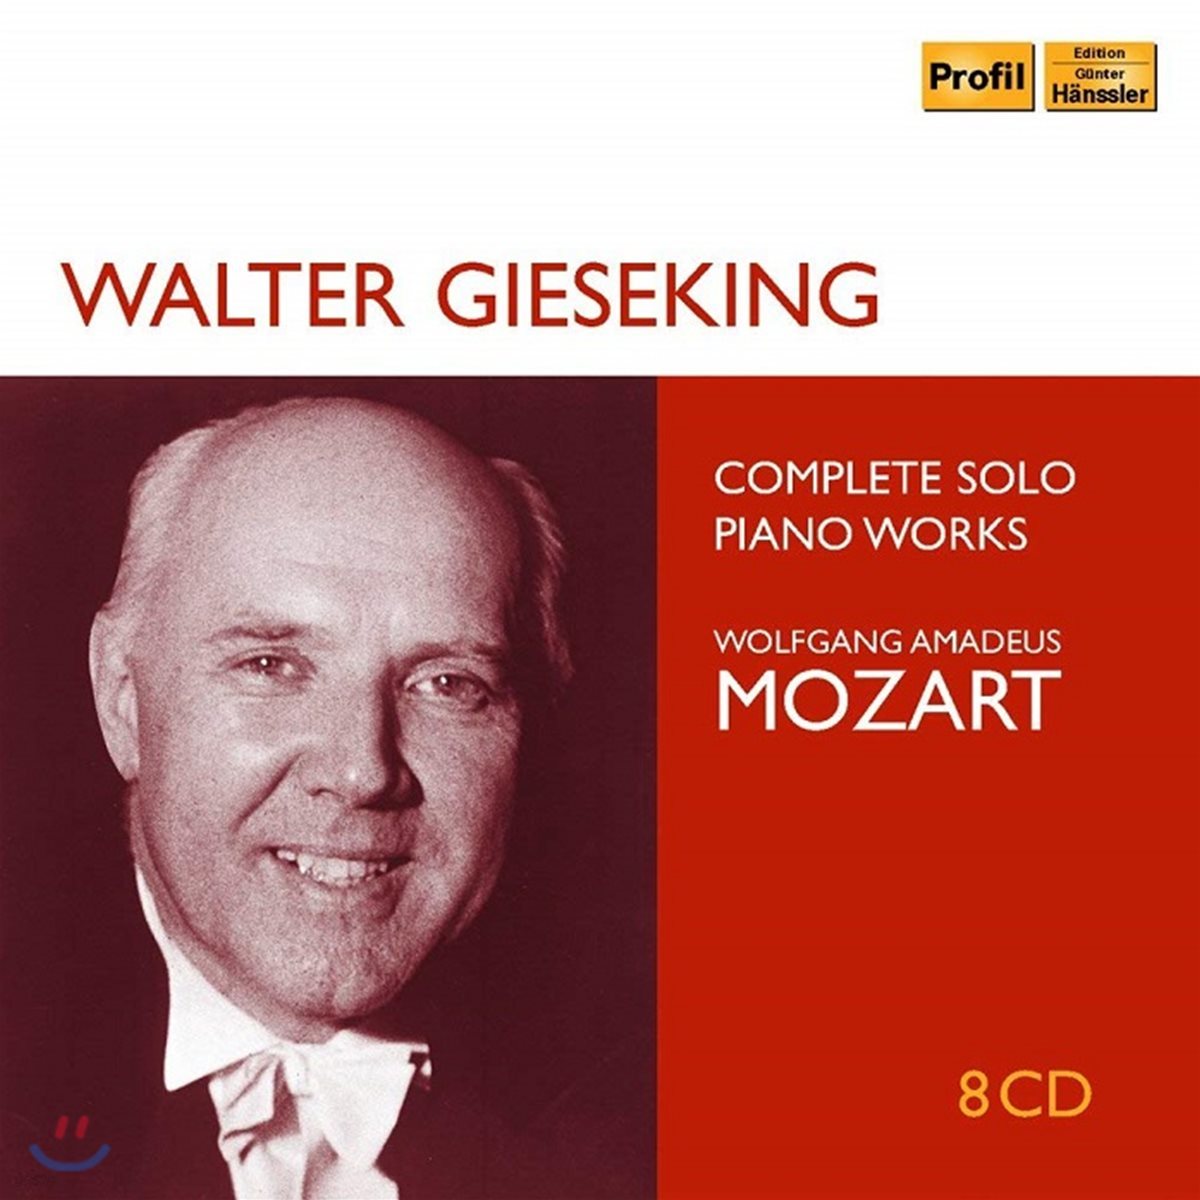 Walter Gieseking 모차르트: 피아노 독주 작품 전곡집 (Mozart: Complete Solo Piano Works) 발터 기제킹